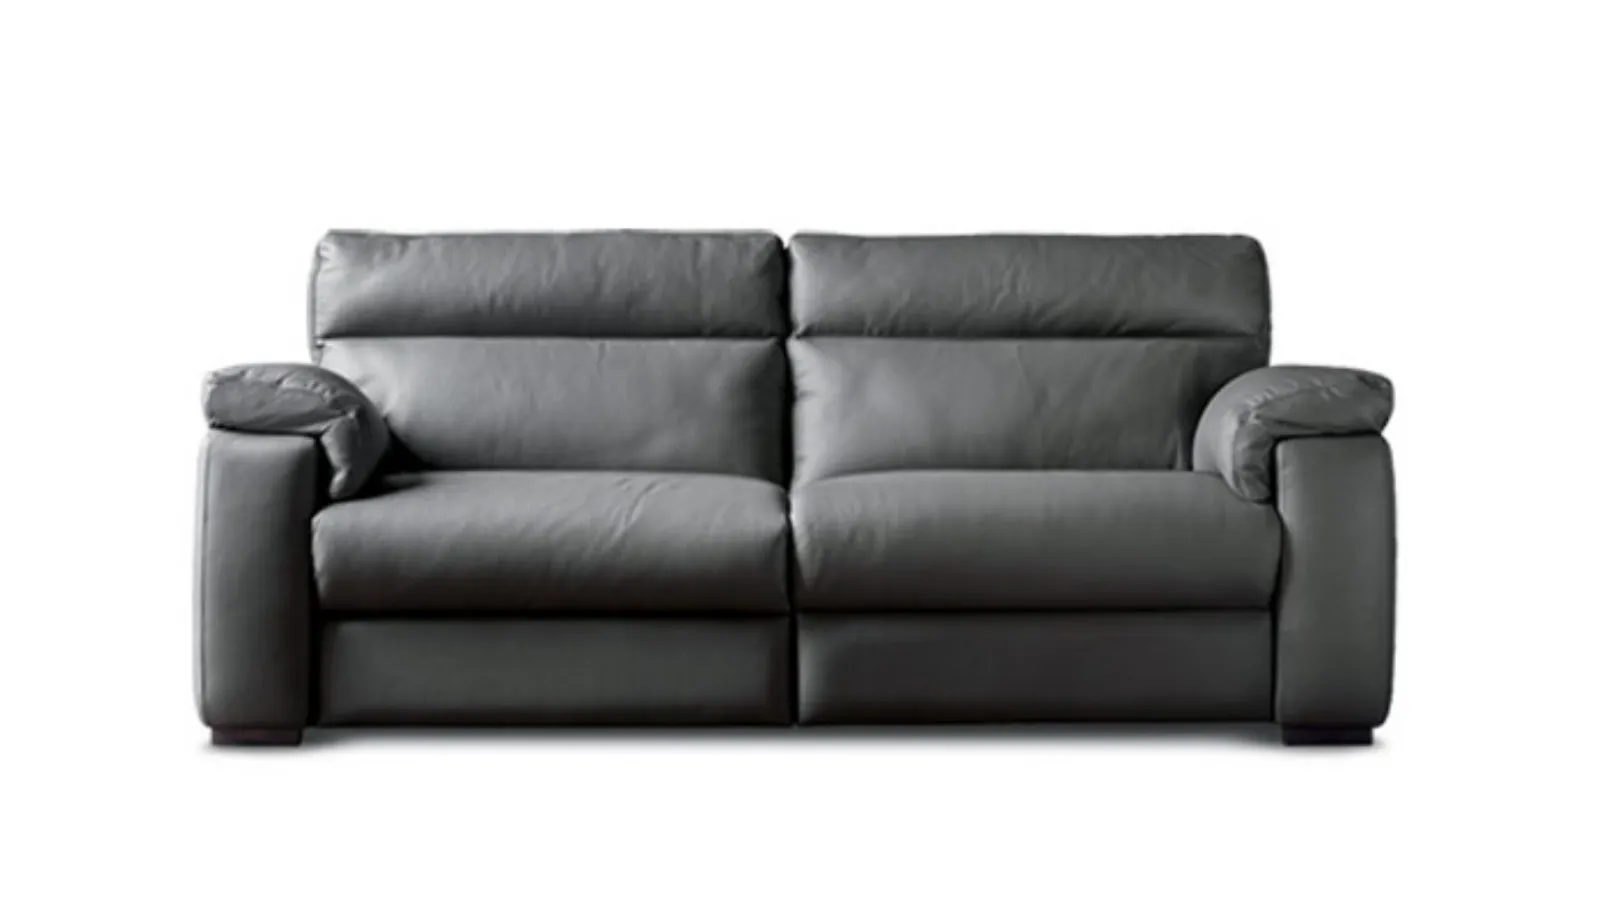 sofa for urban living room William